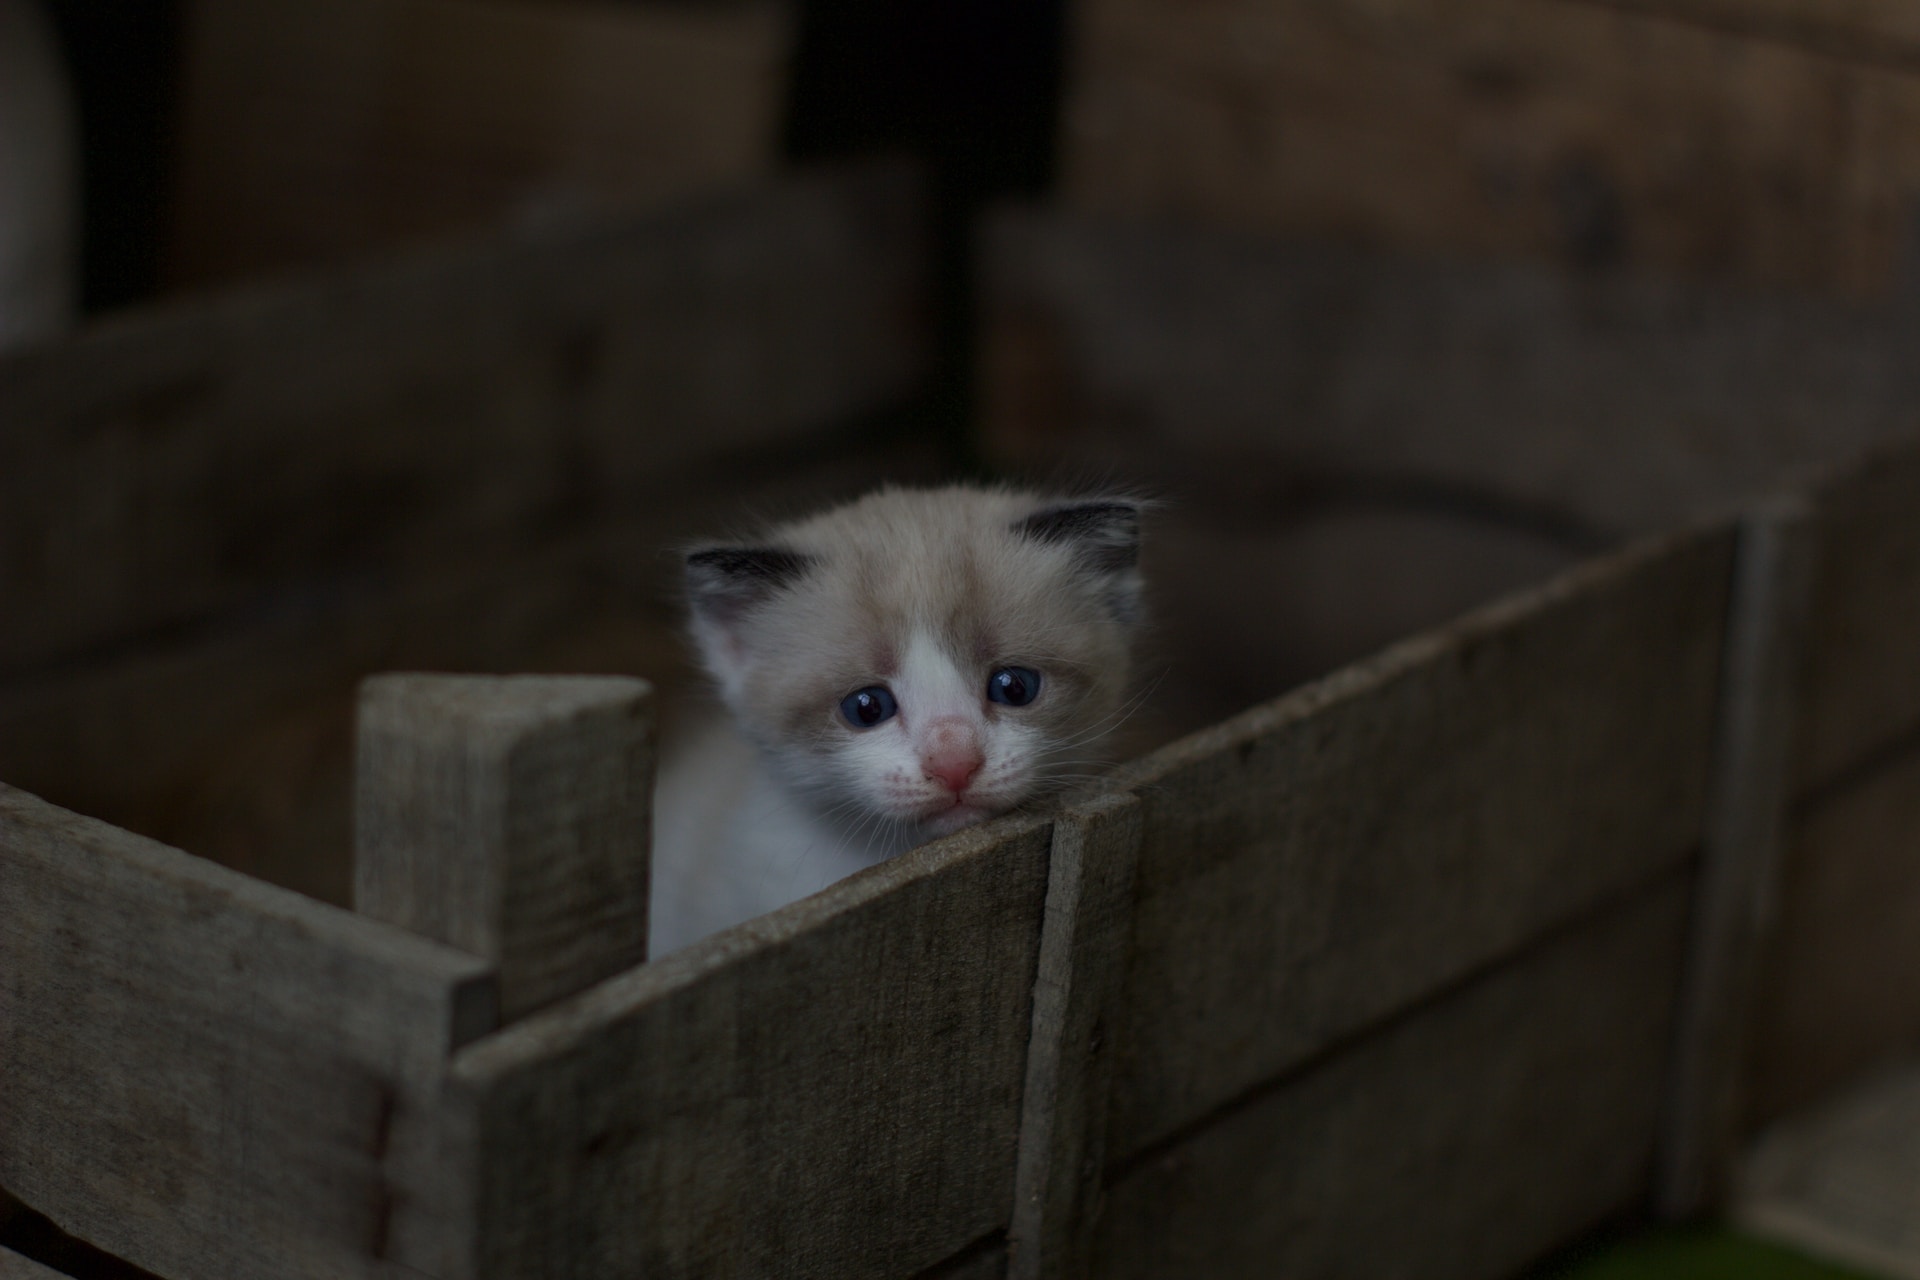 A kitten sitting inside a wooden crate